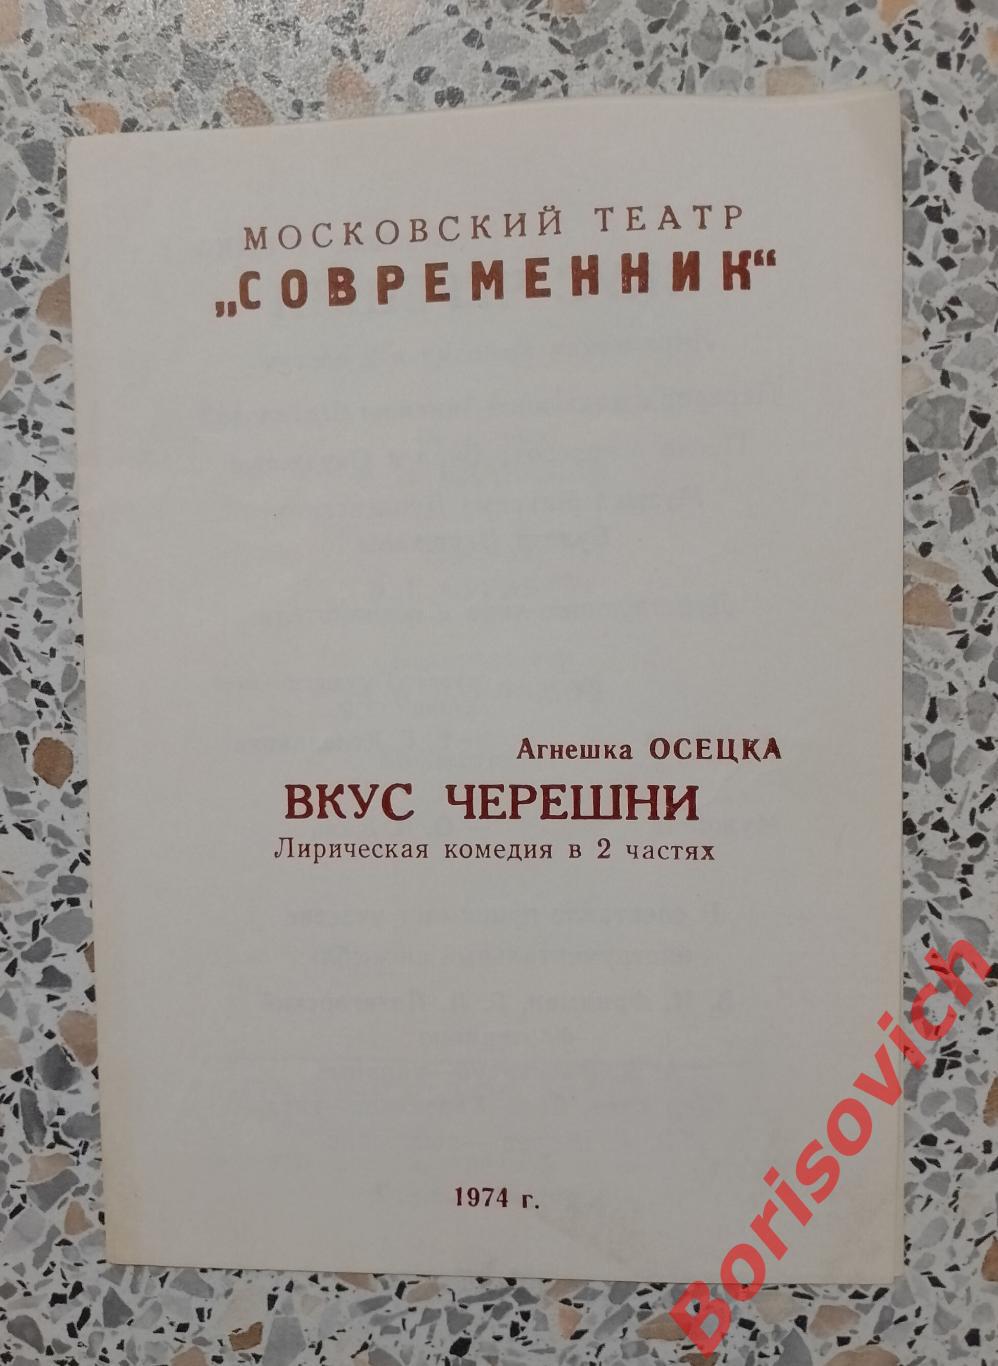 Программка Театр Современник ВКУС ЧЕРЕШНИ О. И. ДАЛЬ 1974 г